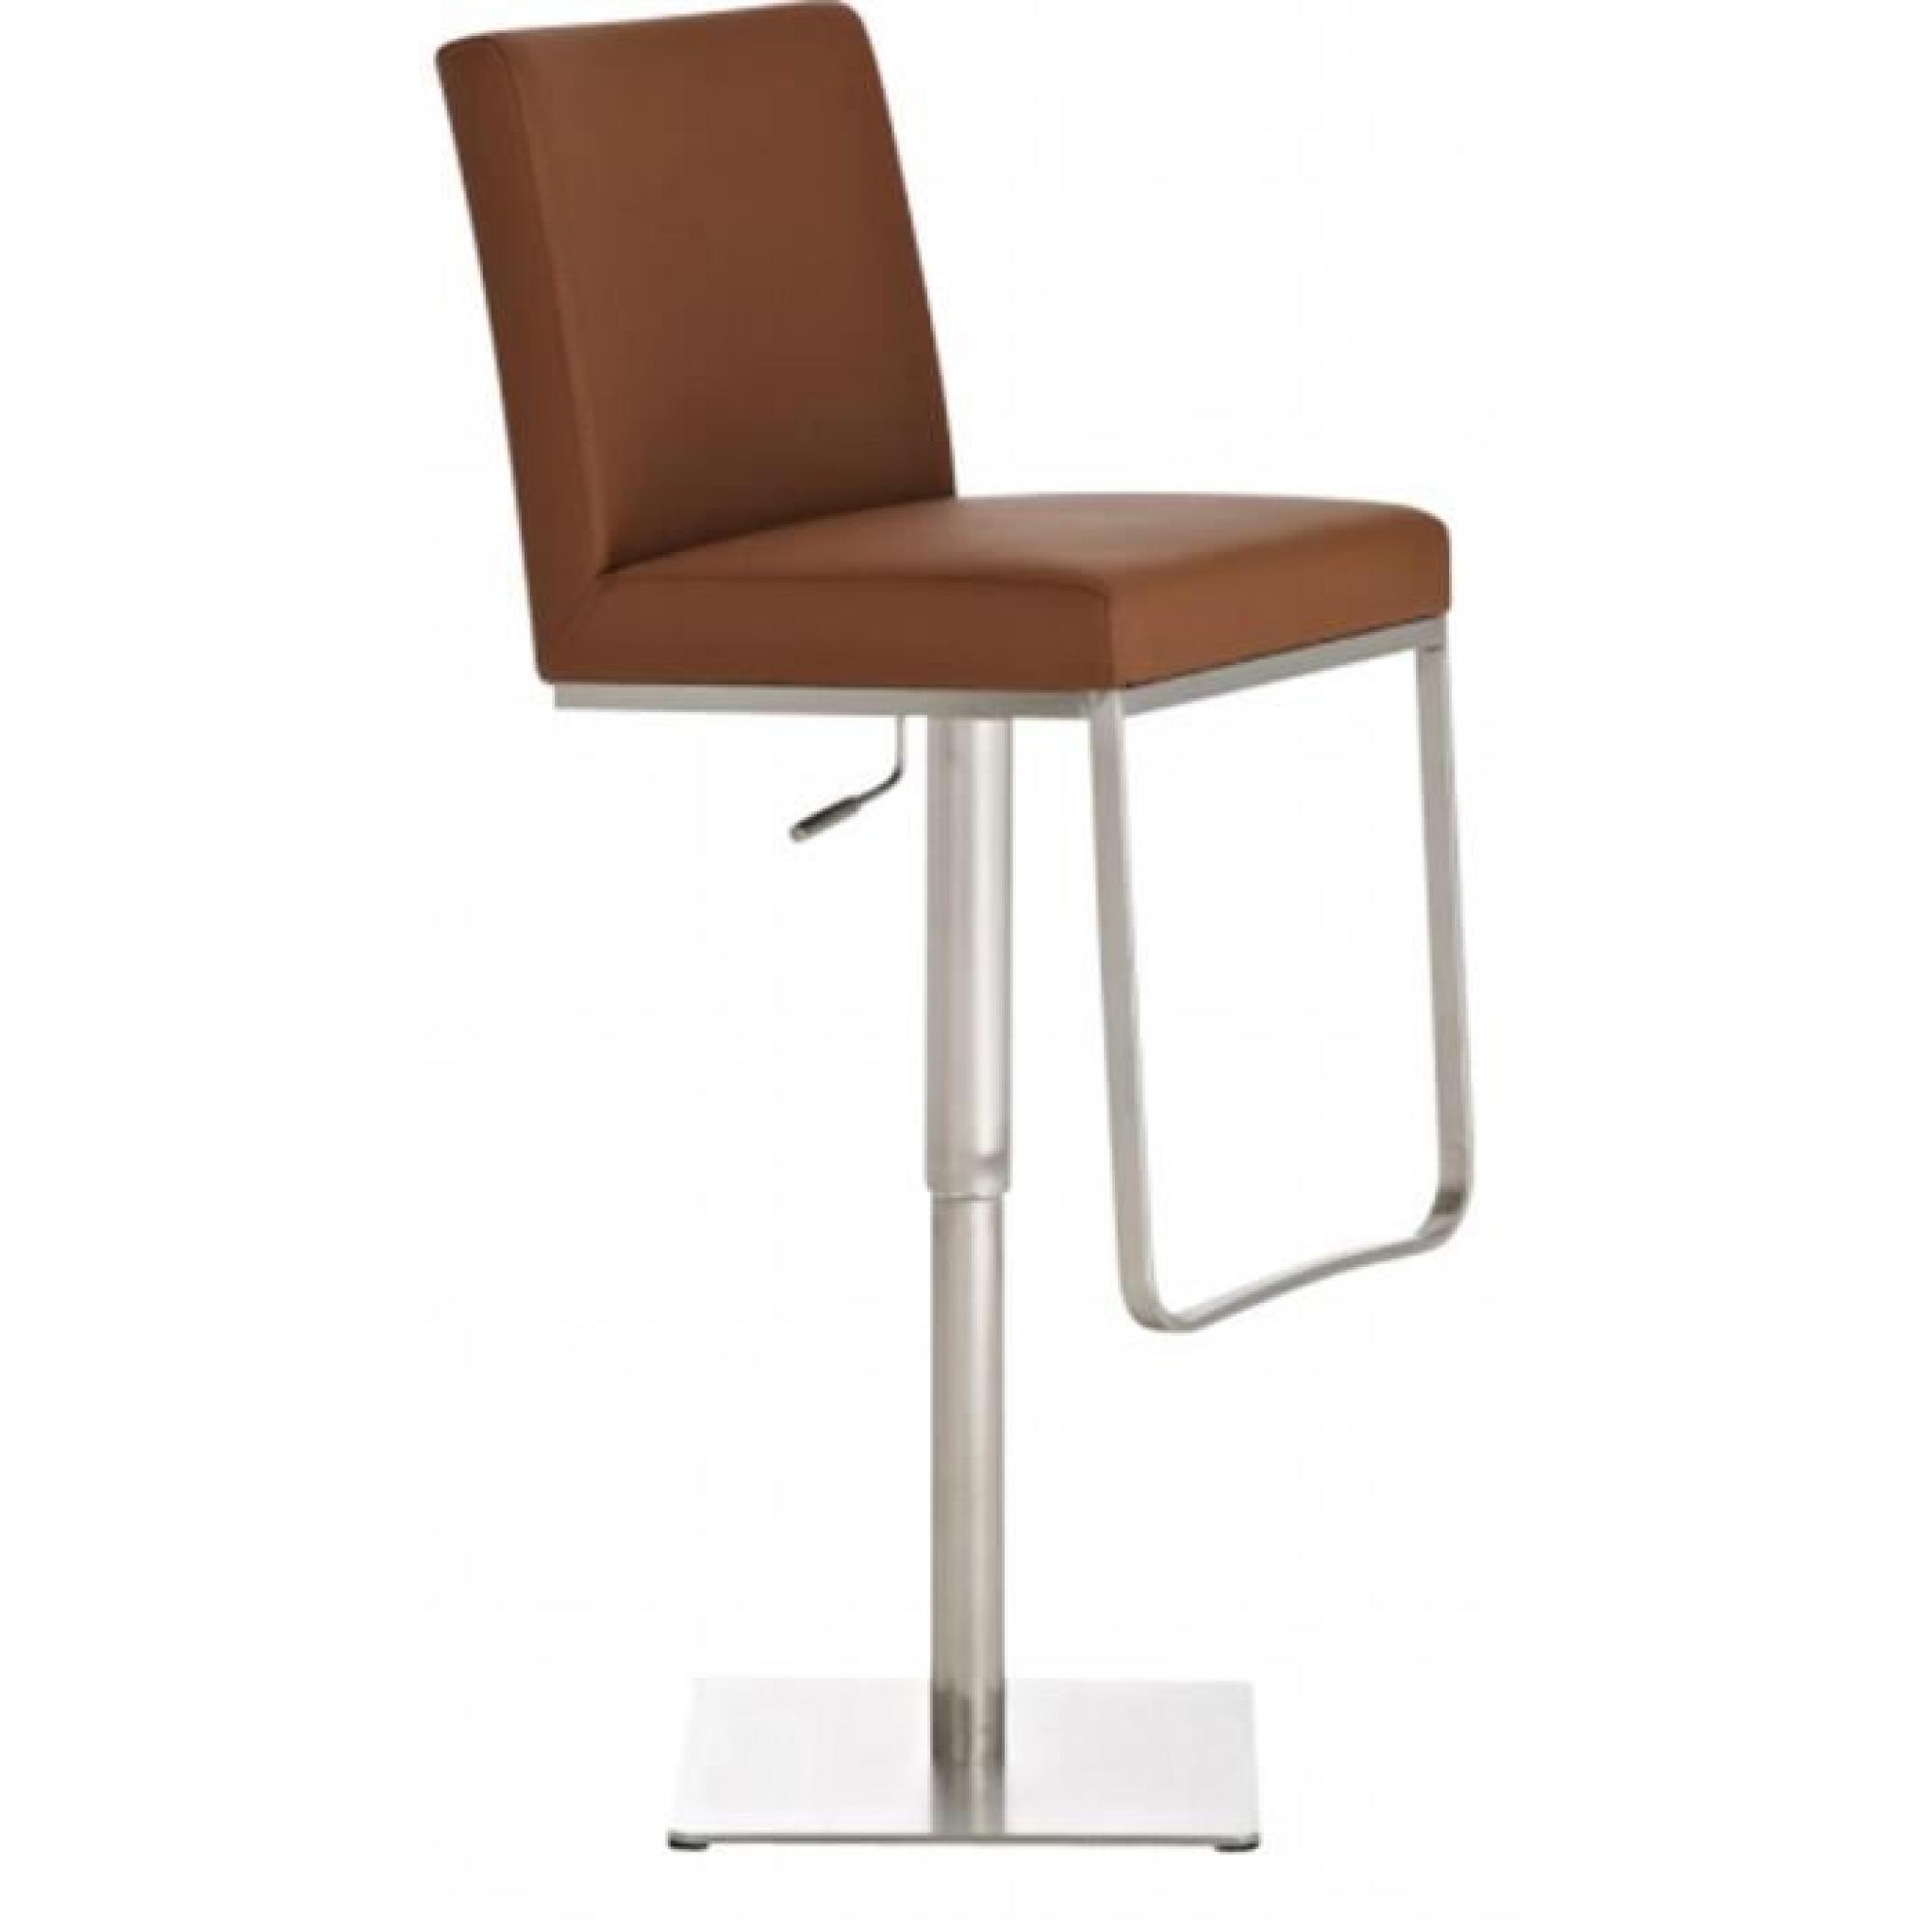 Chaise de bar coloris brun en acier inoxydable, H 92-116 x L 44 x P 55 cm